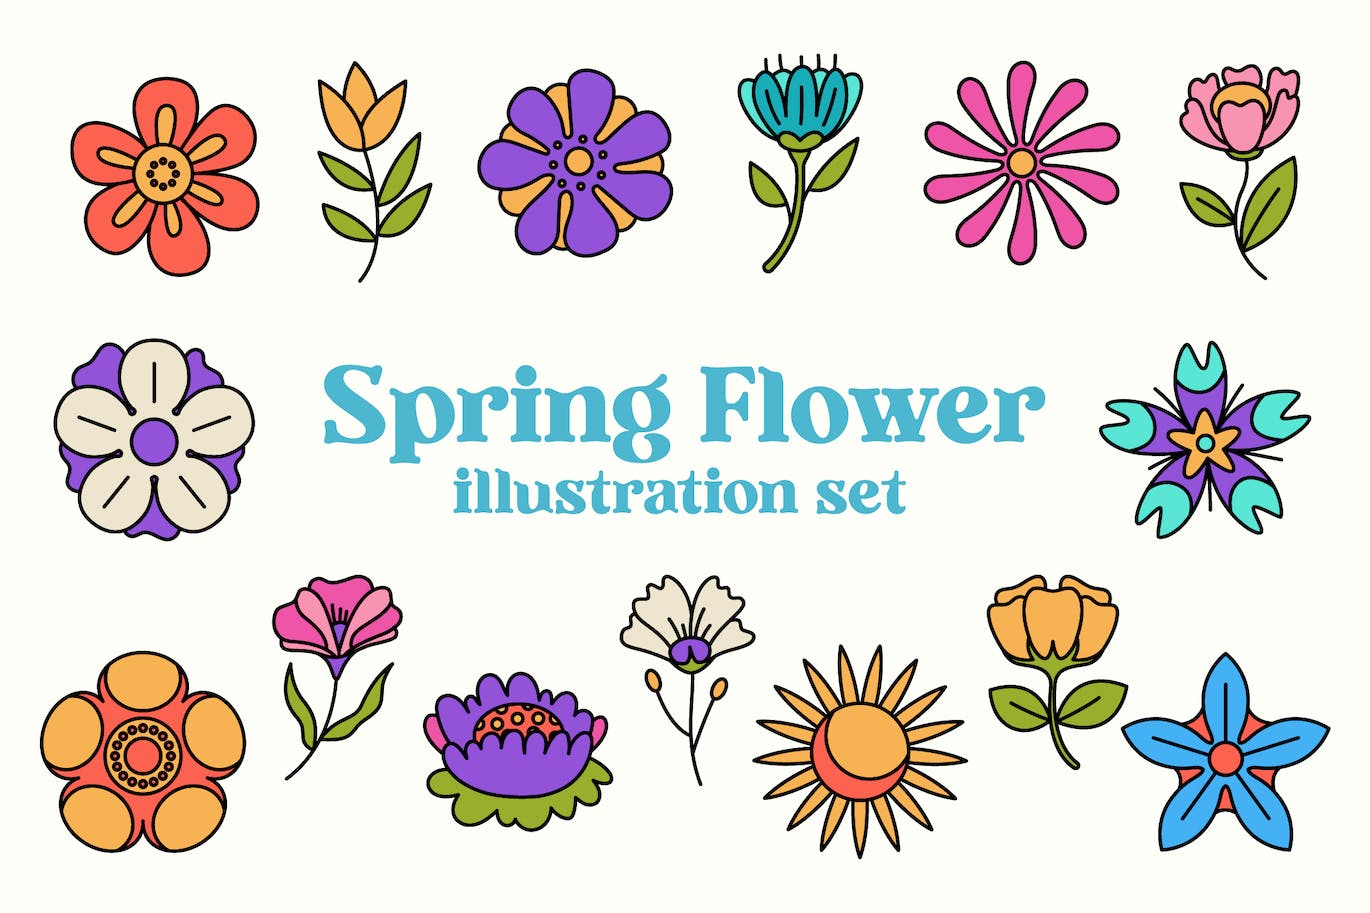 春天花朵矢量插画集 Spring Flower Illustration Set 设计素材 第1张